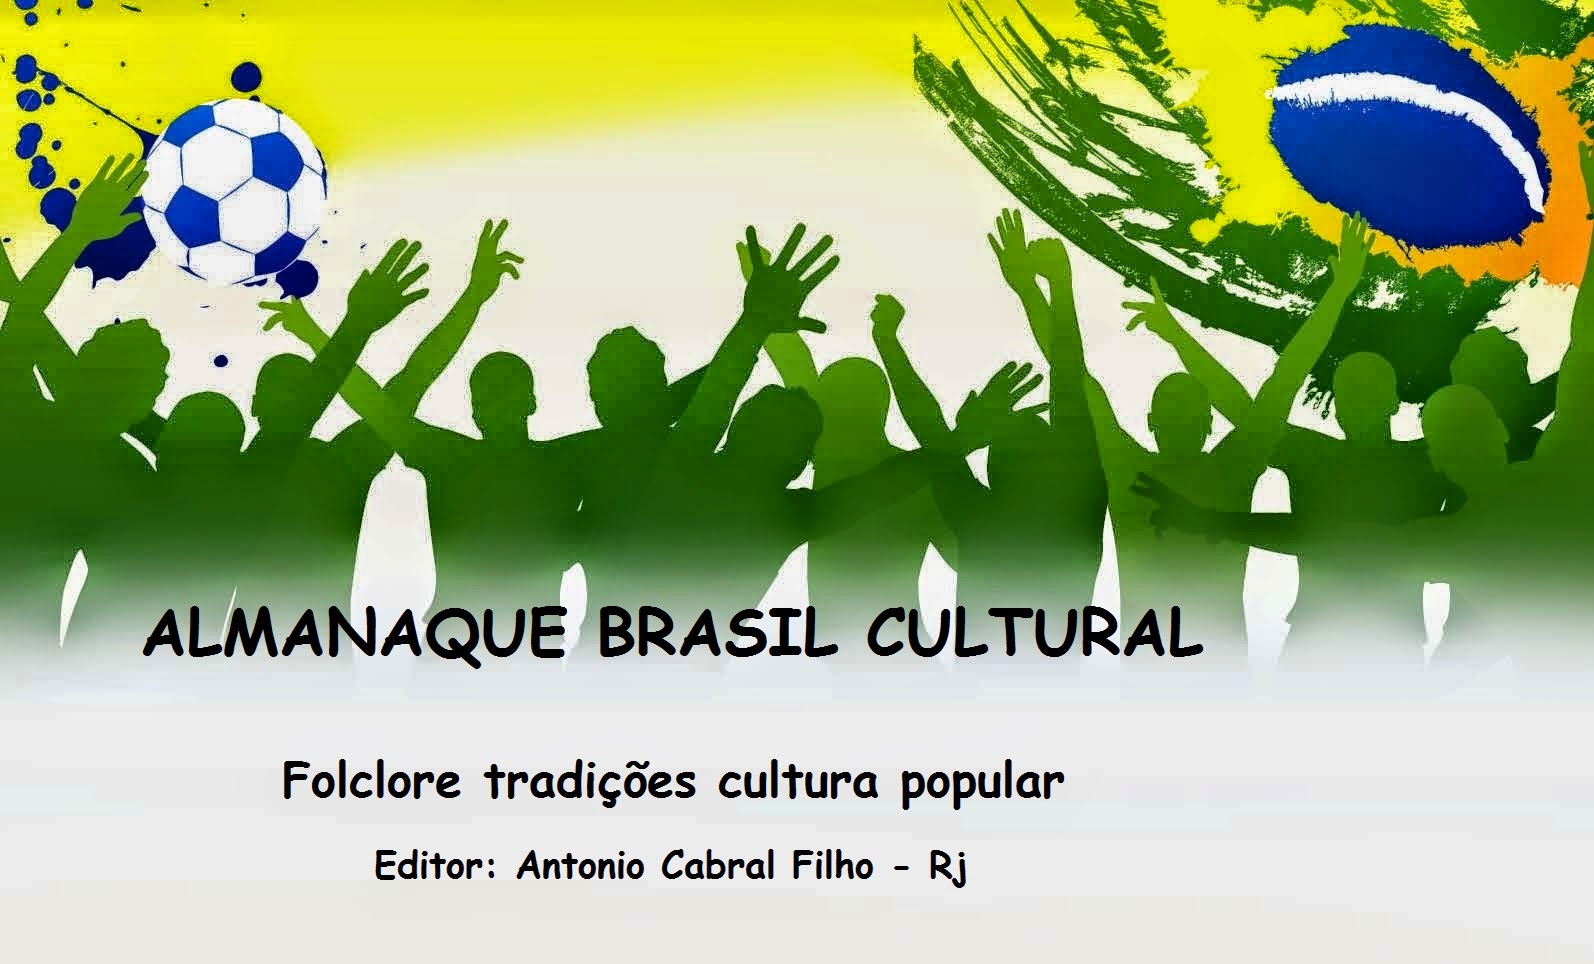 Almanaque Brasil Cultural - tradições, folclore, cultura popular.